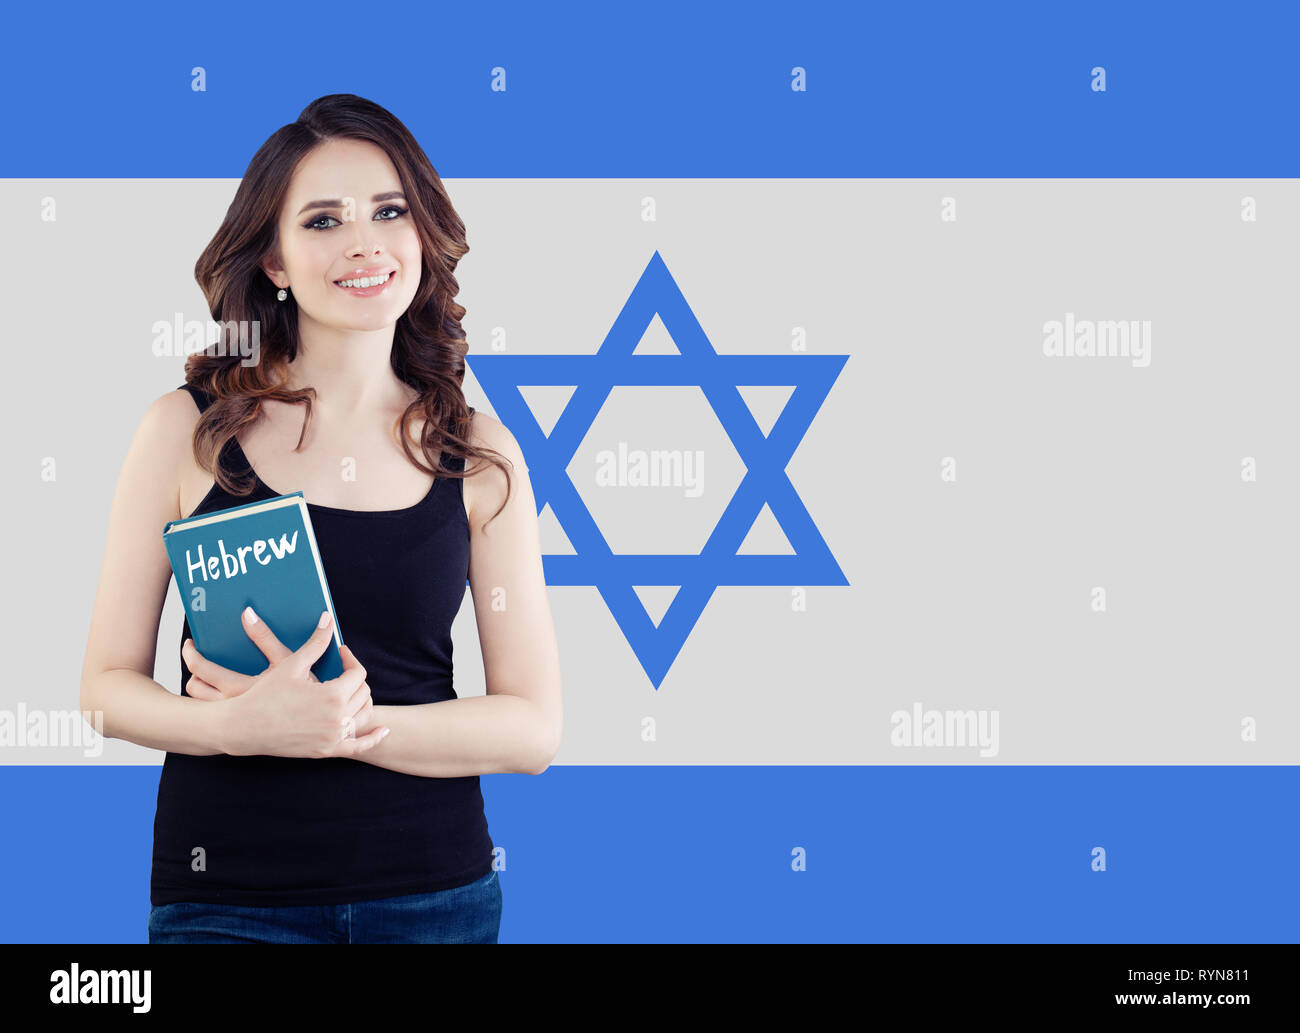 Hebräische Sprache Konzept mit Frau Student und die Israel Flagge Stockfoto